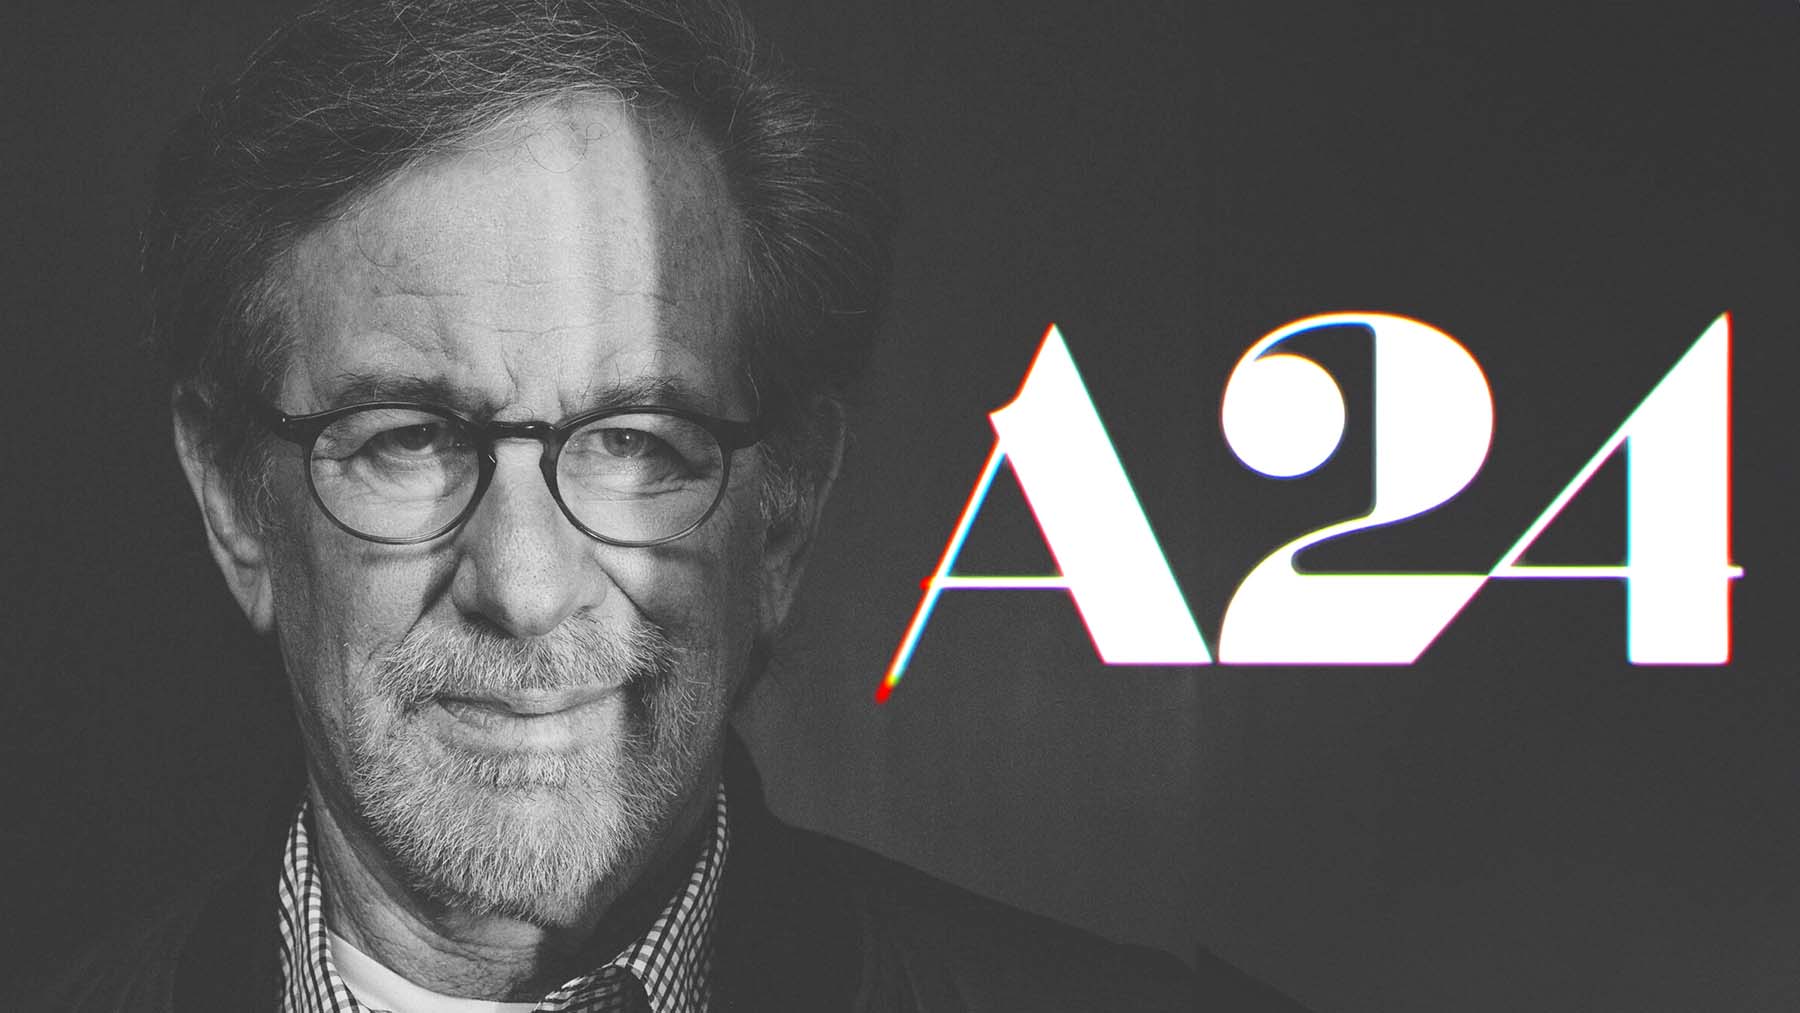 Steven Spielberg producirá junto a A24 una nueva película.